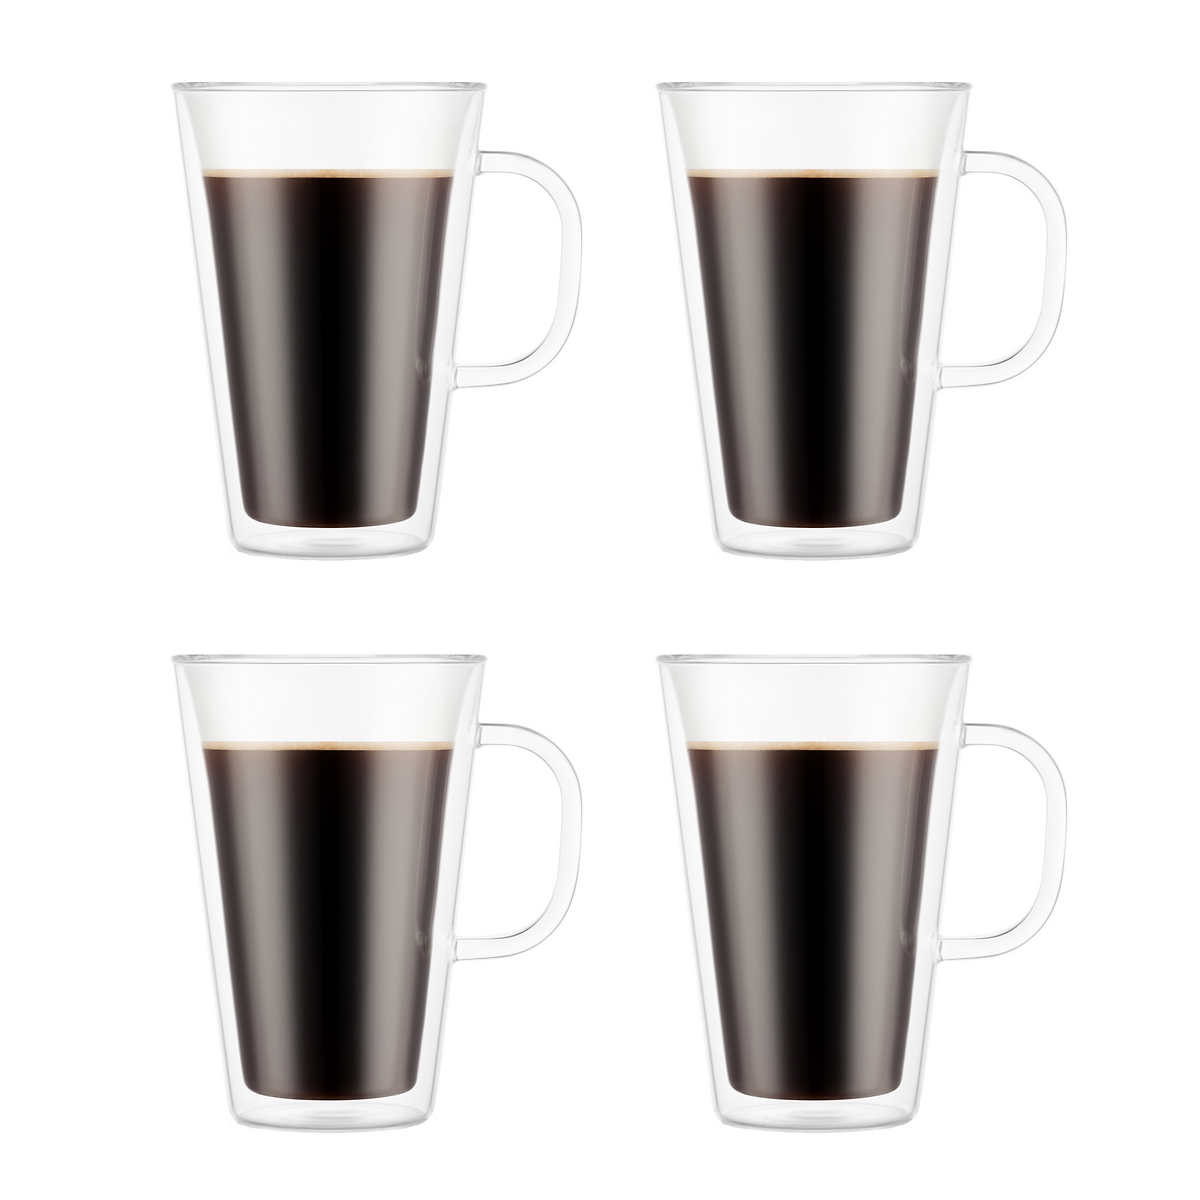 Christmas Coffee Mug Glass Mugs For Hot Drinks With Handles Double